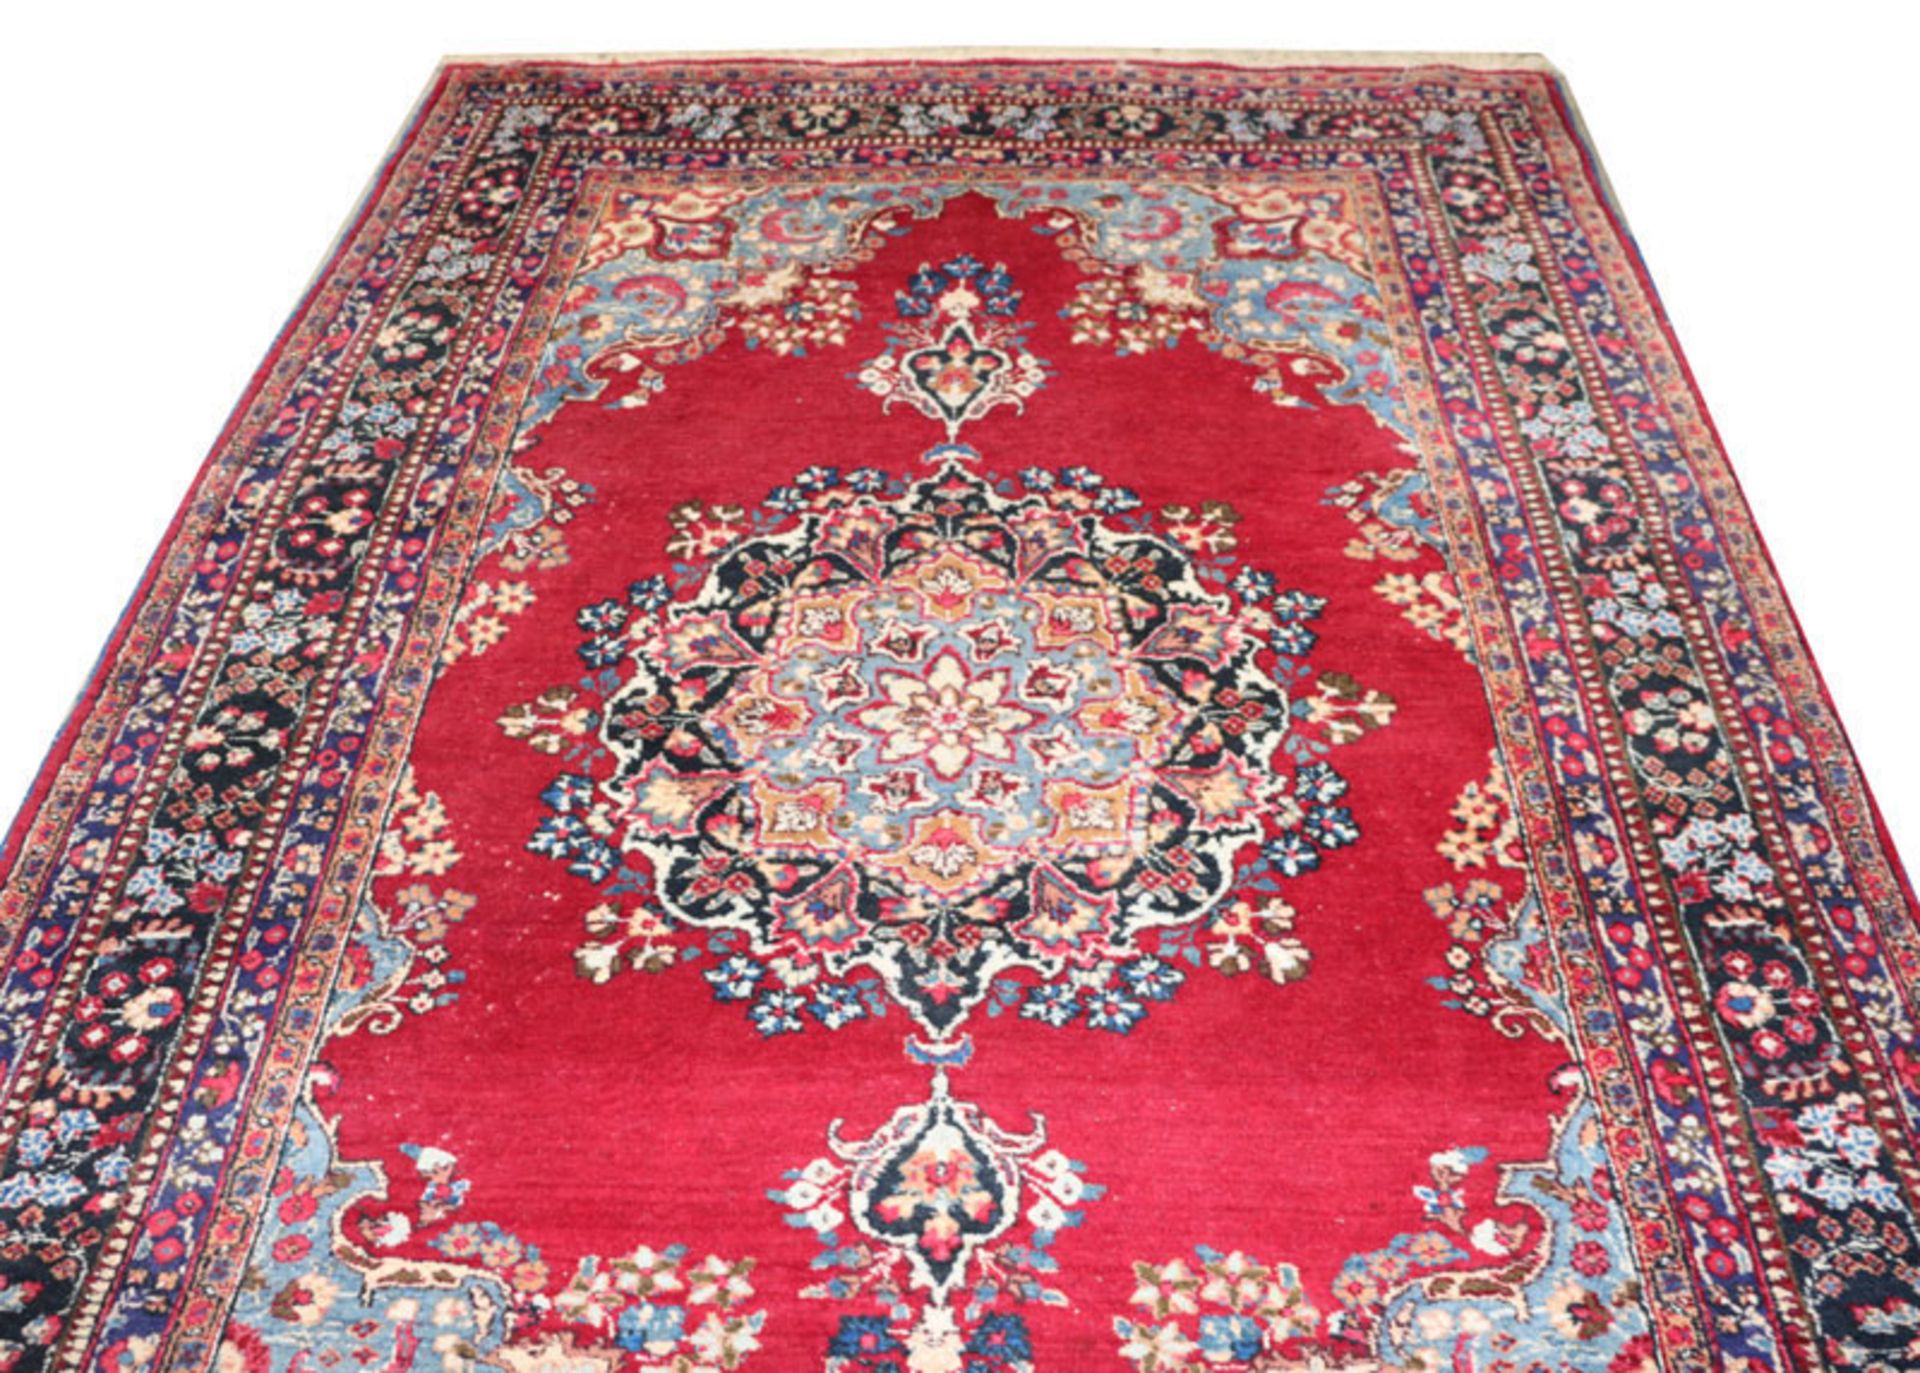 Teppich, Kirman, rot/blau/bunt, Gebrauchsspuren, teils abgetreten, 290 cm x 190 cm